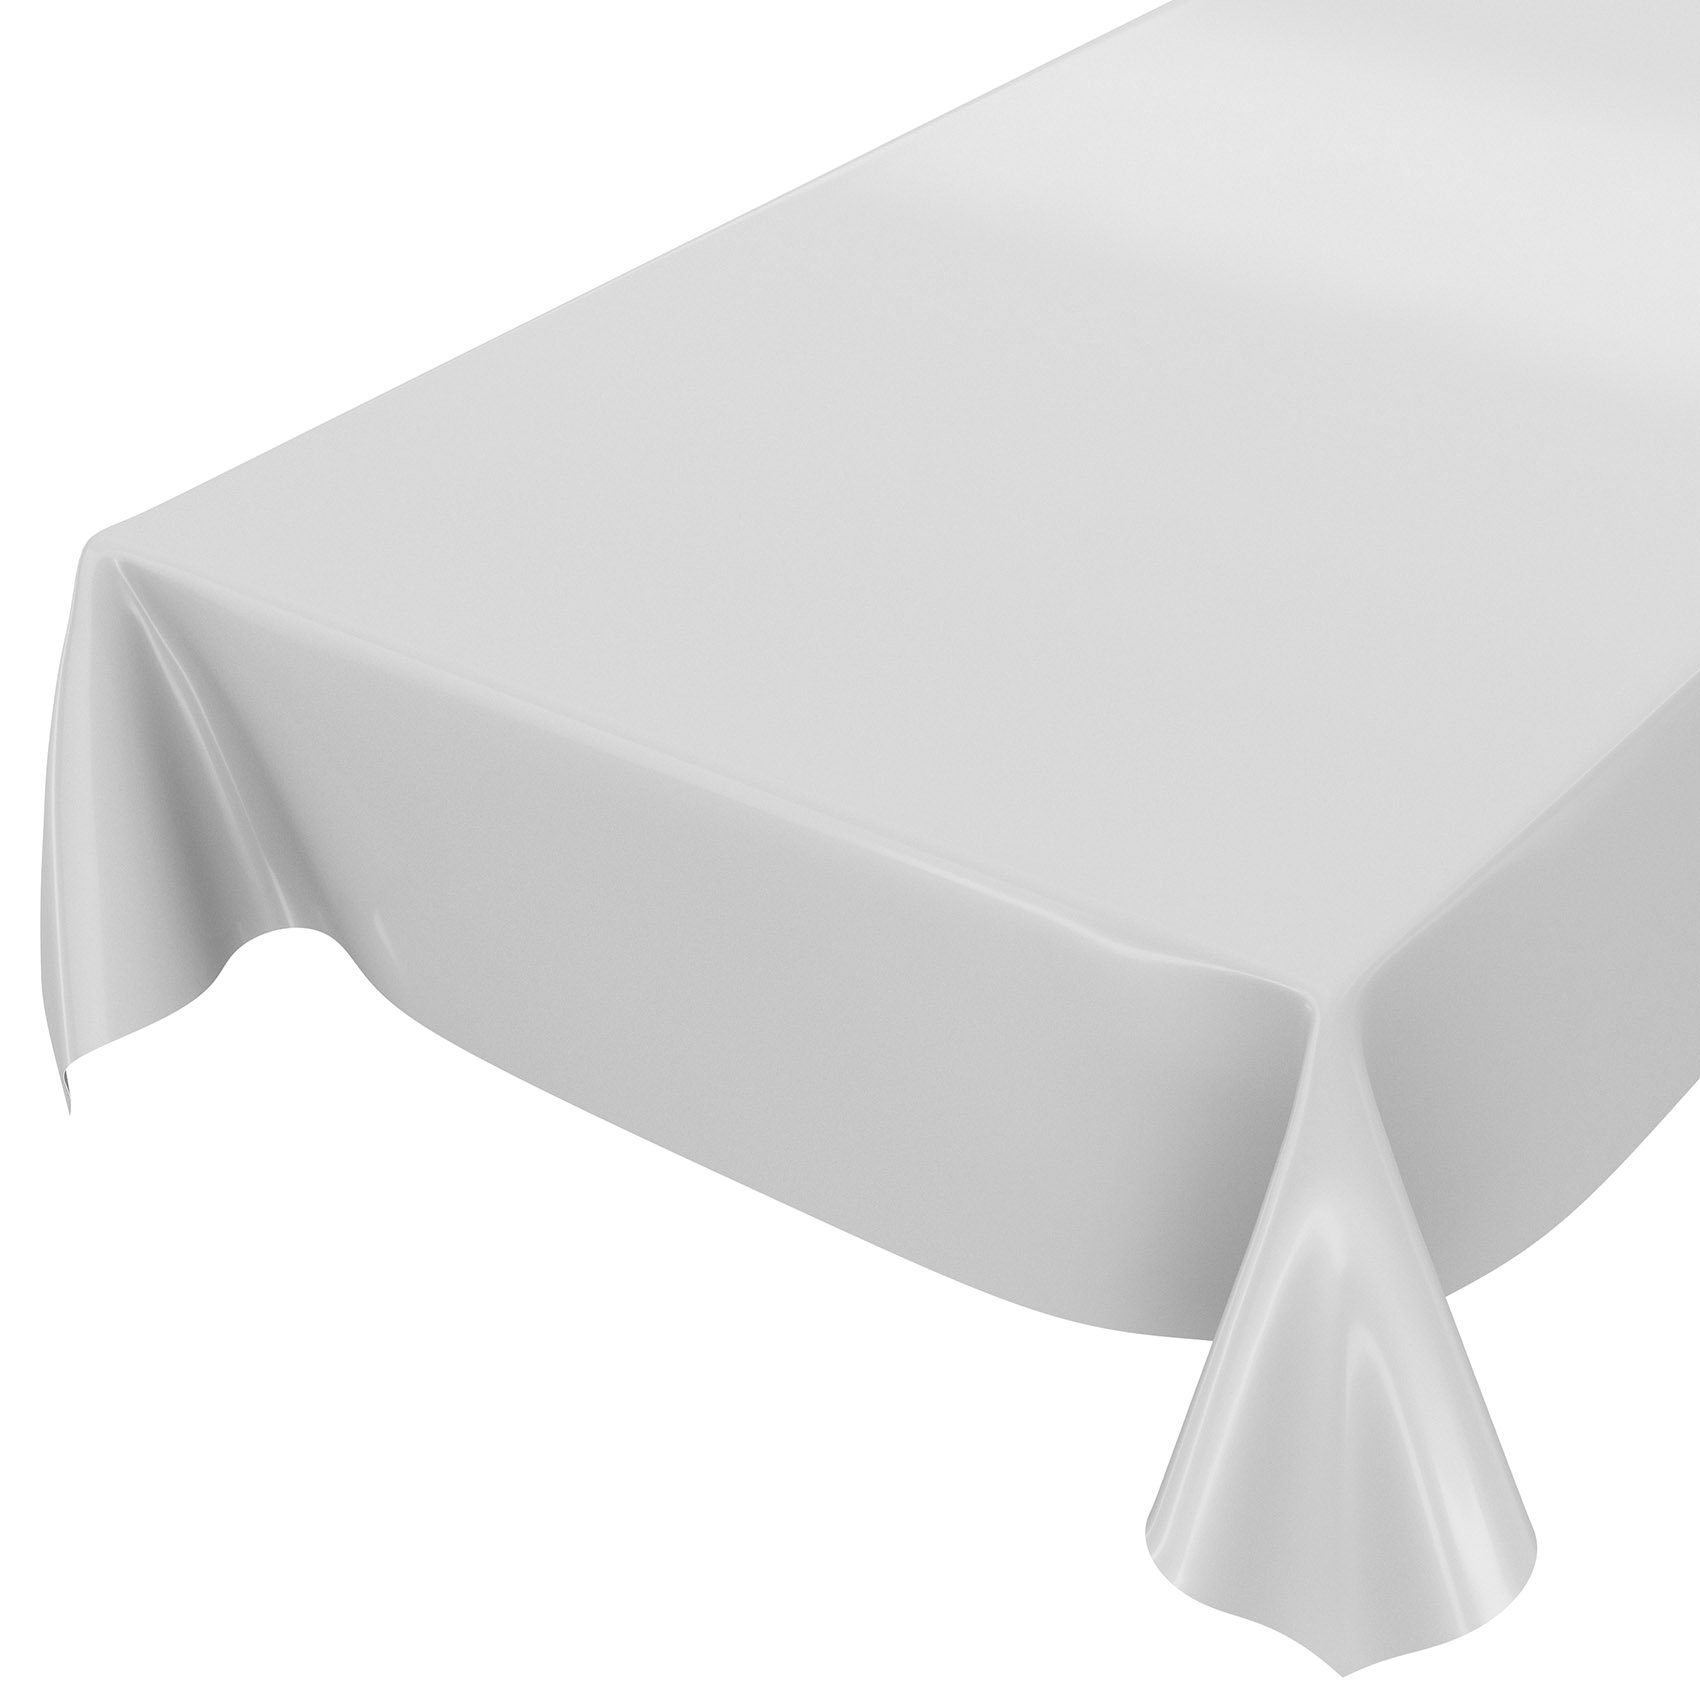 ANRO Tischdecke Tischdecke Uni Hellgrau Einfarbig Glanz abwaschbar Wachstuch Wachstuch, Glatt